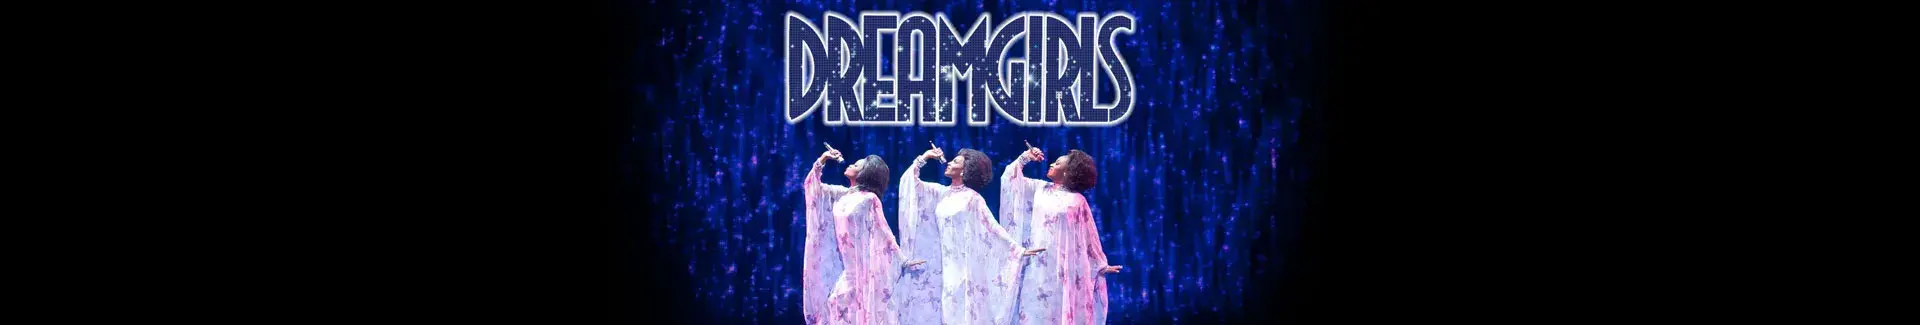 Dreamgirls Tickets